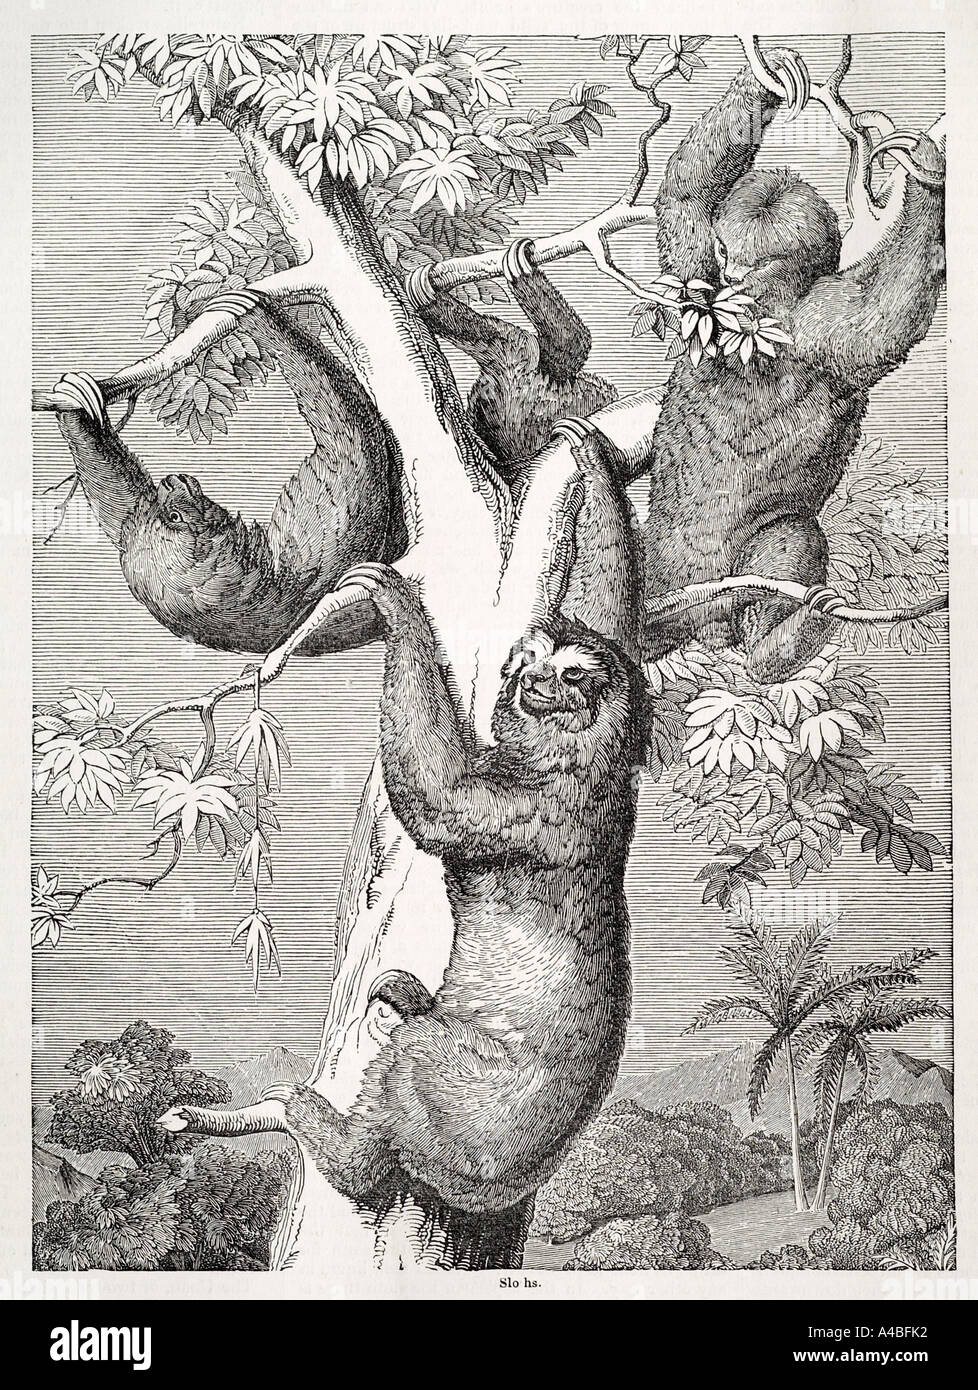 Slothnature natürlichen wilden freien Säugetier Faultier Baum langsam träge Fell Klettern Klaue Südamerika Haar Bradypus Dschungel vegetarische harmles Stockfoto